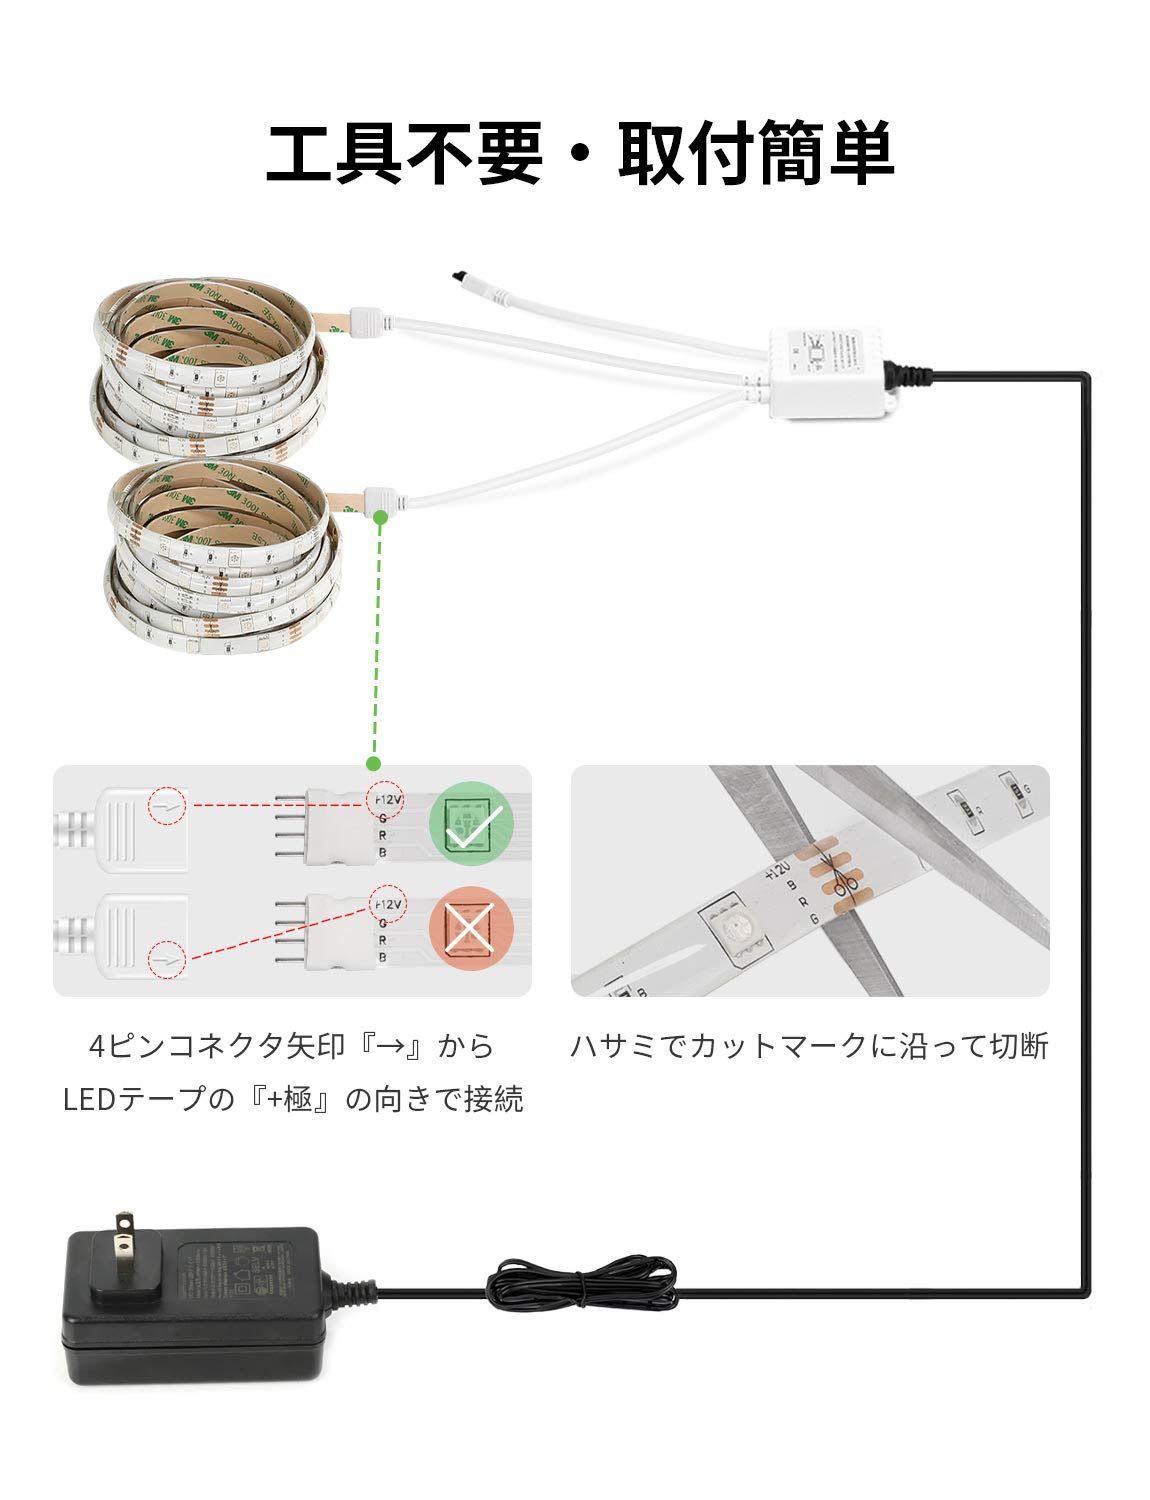 【特価セール】Lepro LEDテープライト SMD 5050 防水 ledテー